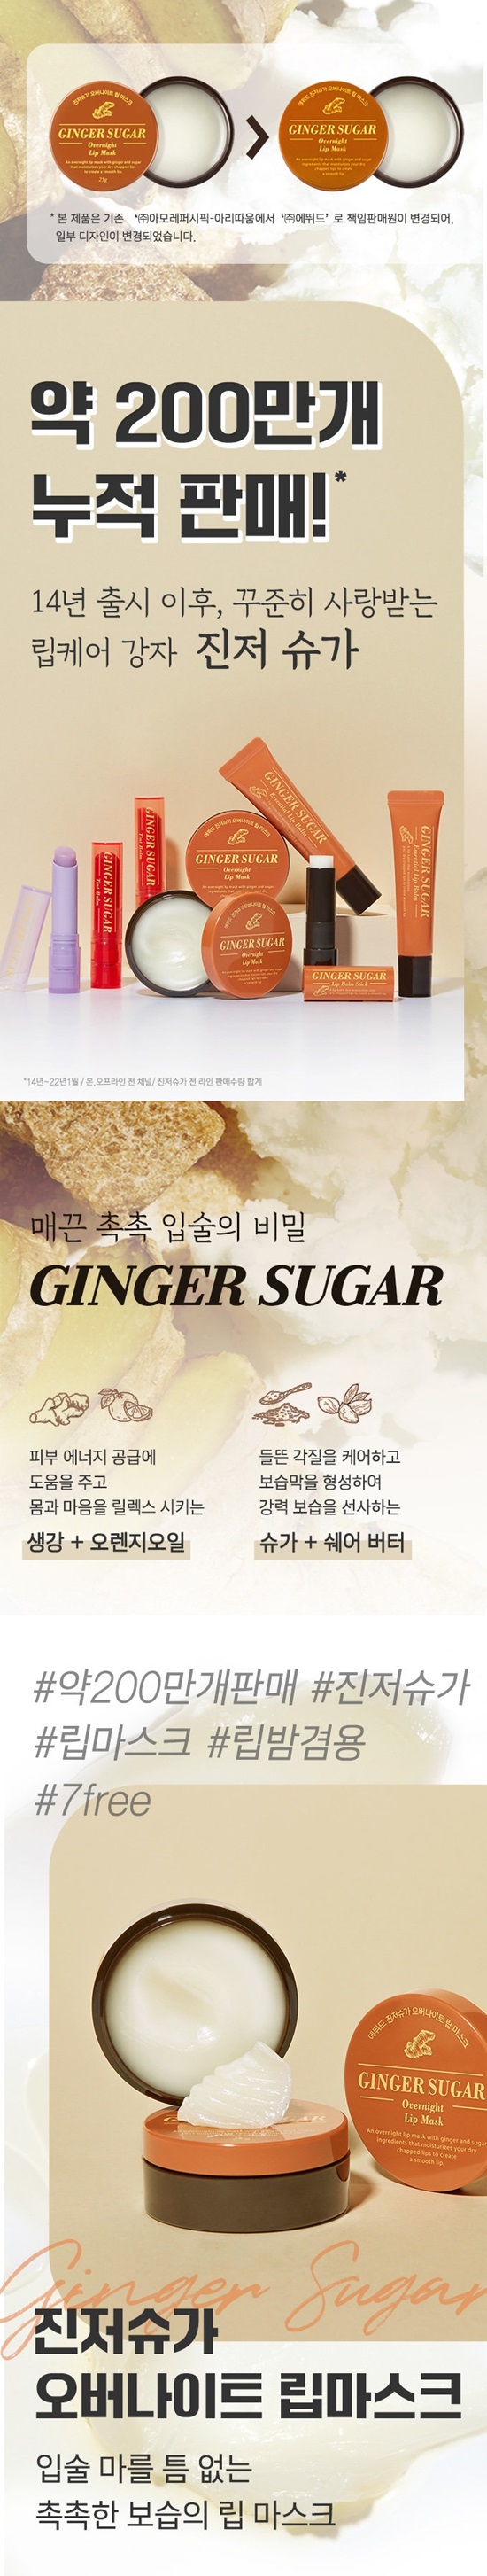 etude-ginger-sugar-overnight-lip-mask-info1.jpg